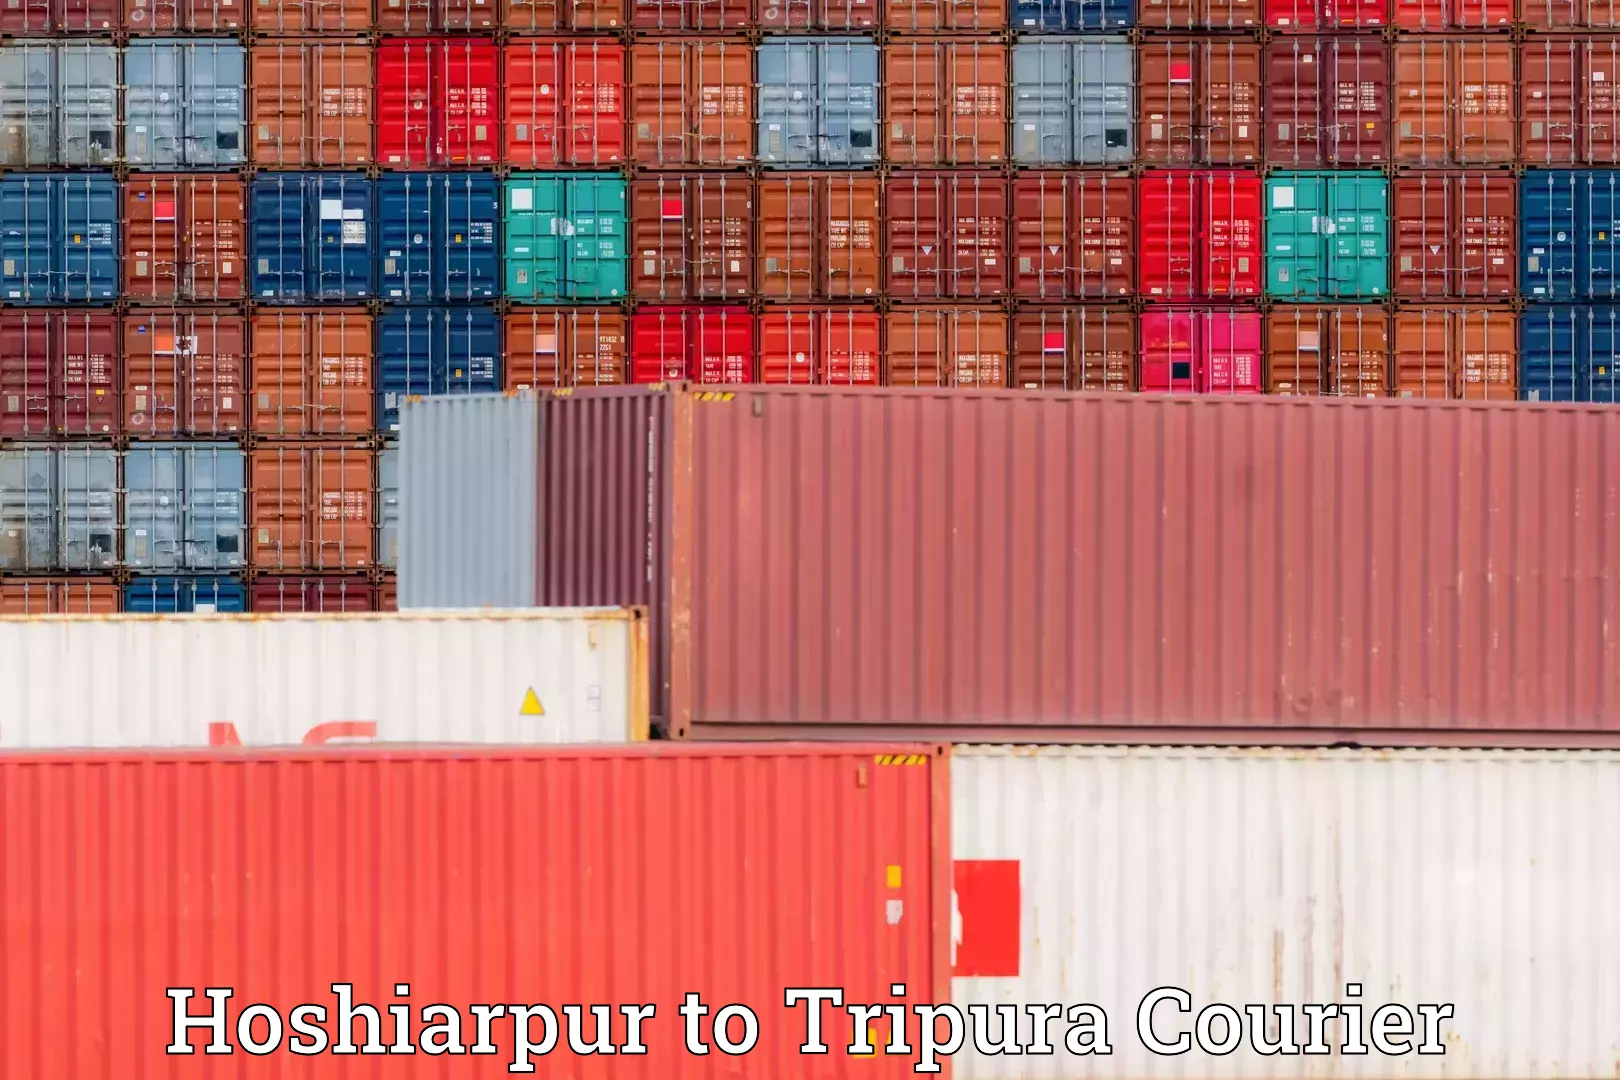 Furniture transport company Hoshiarpur to Tripura